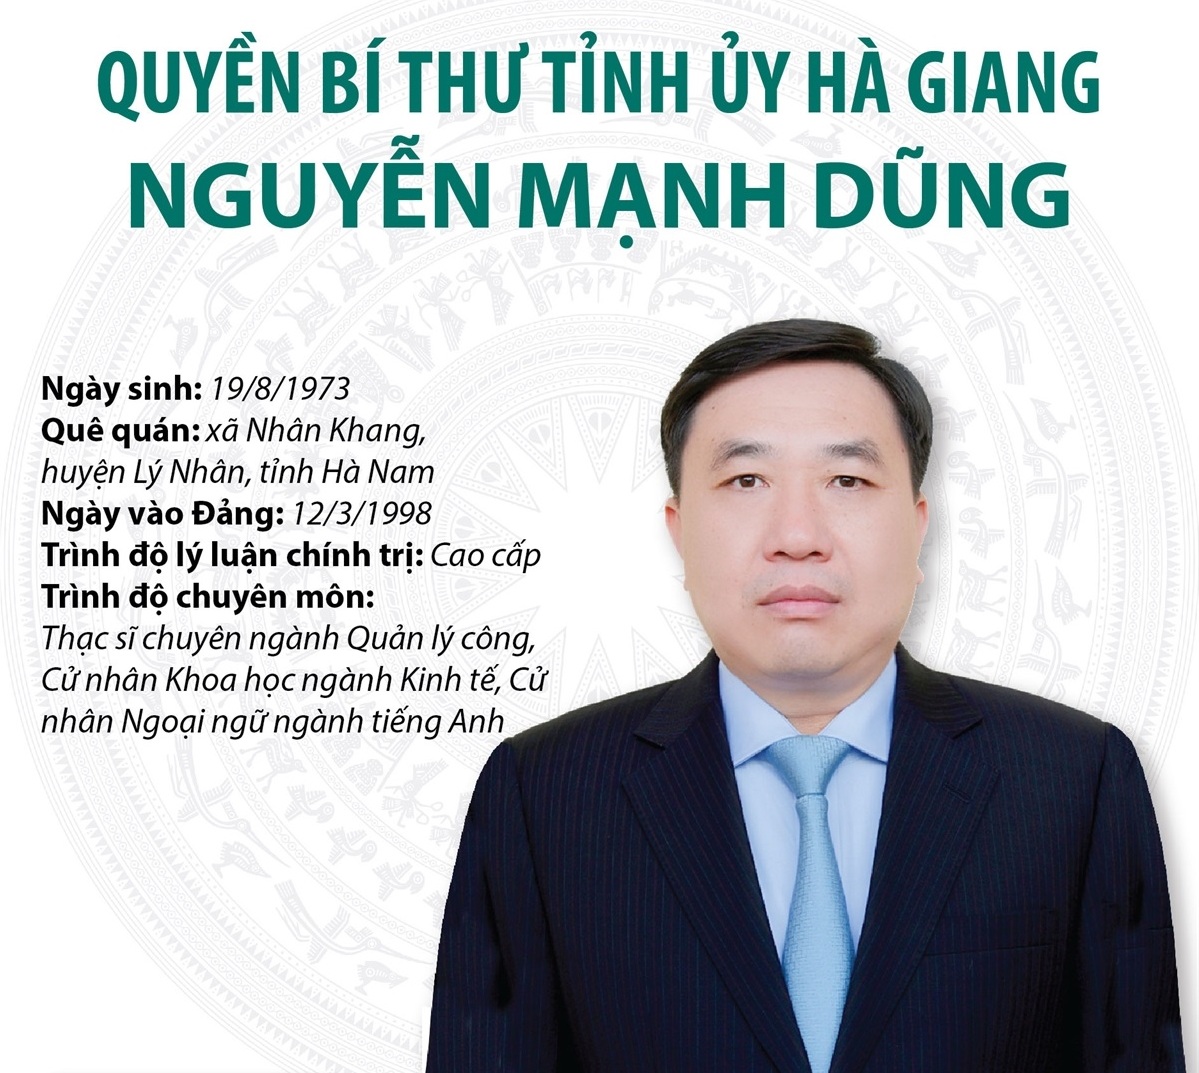 Quyền Bí thư Tỉnh ủy Hà Giang Nguyễn Mạnh Dũng | baotintuc.vn